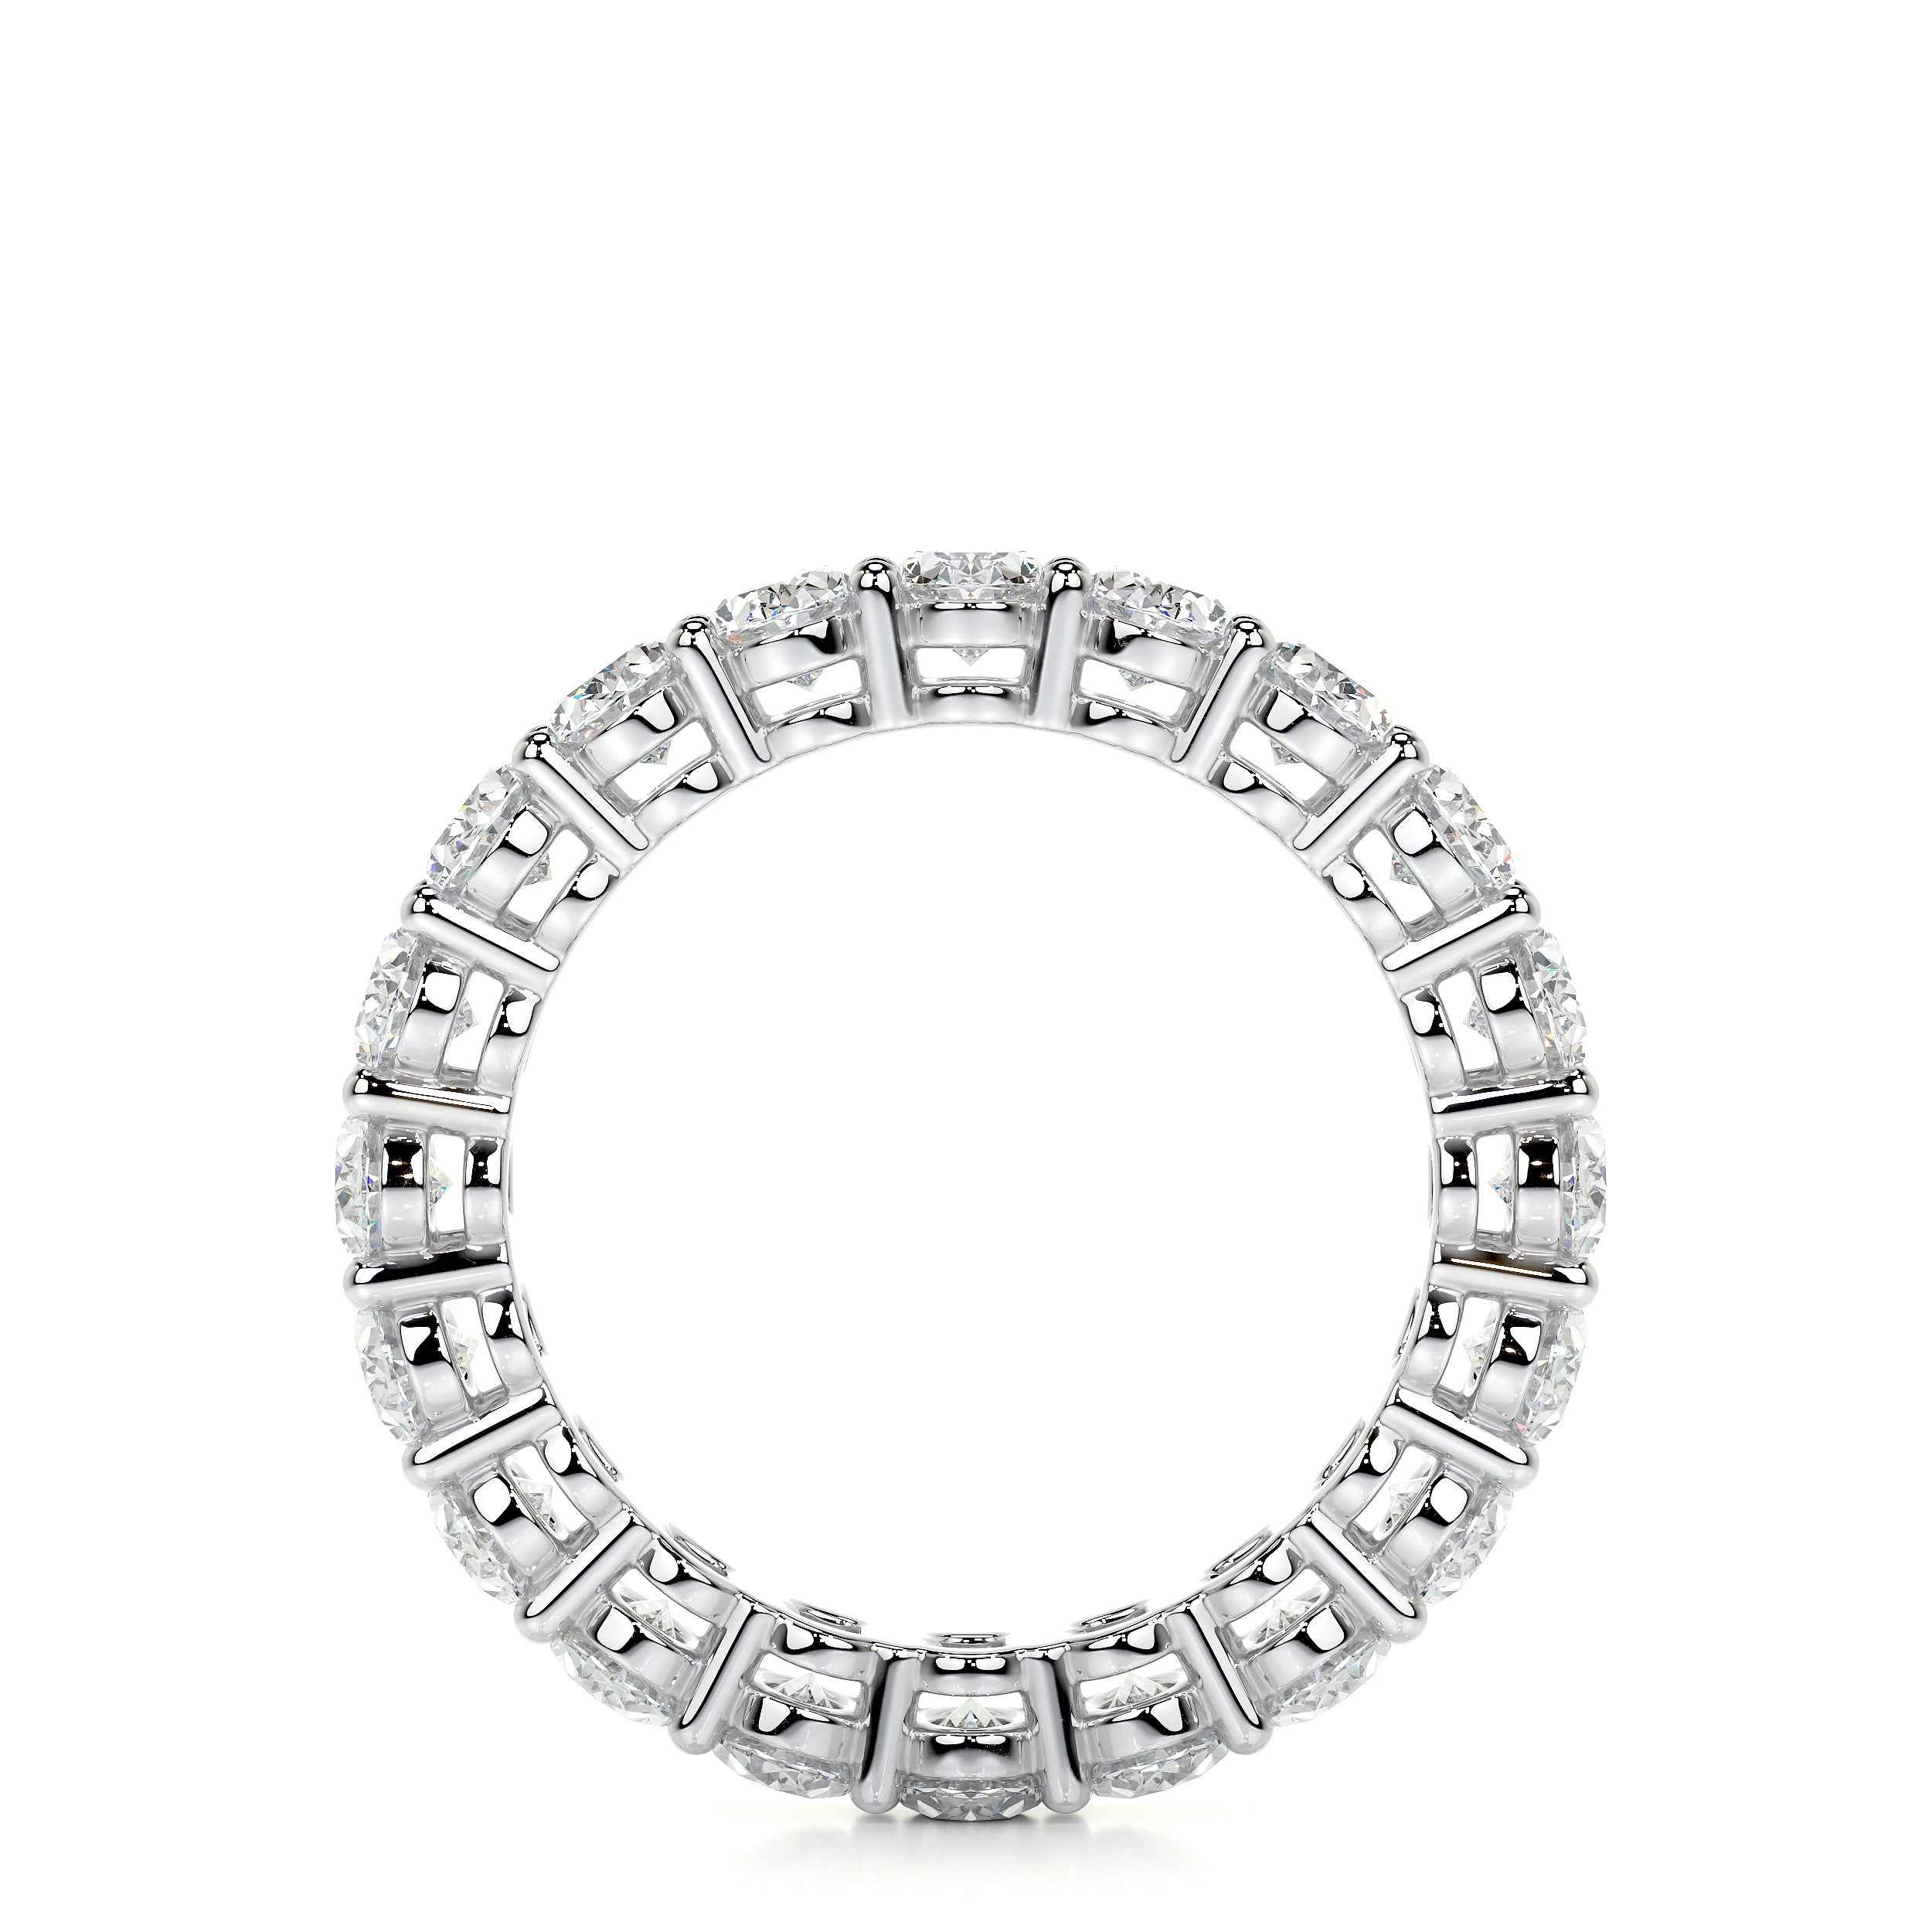 Julia Lab Grown Diamond Wedding Ring   (3.5 Carat) -14K White Gold